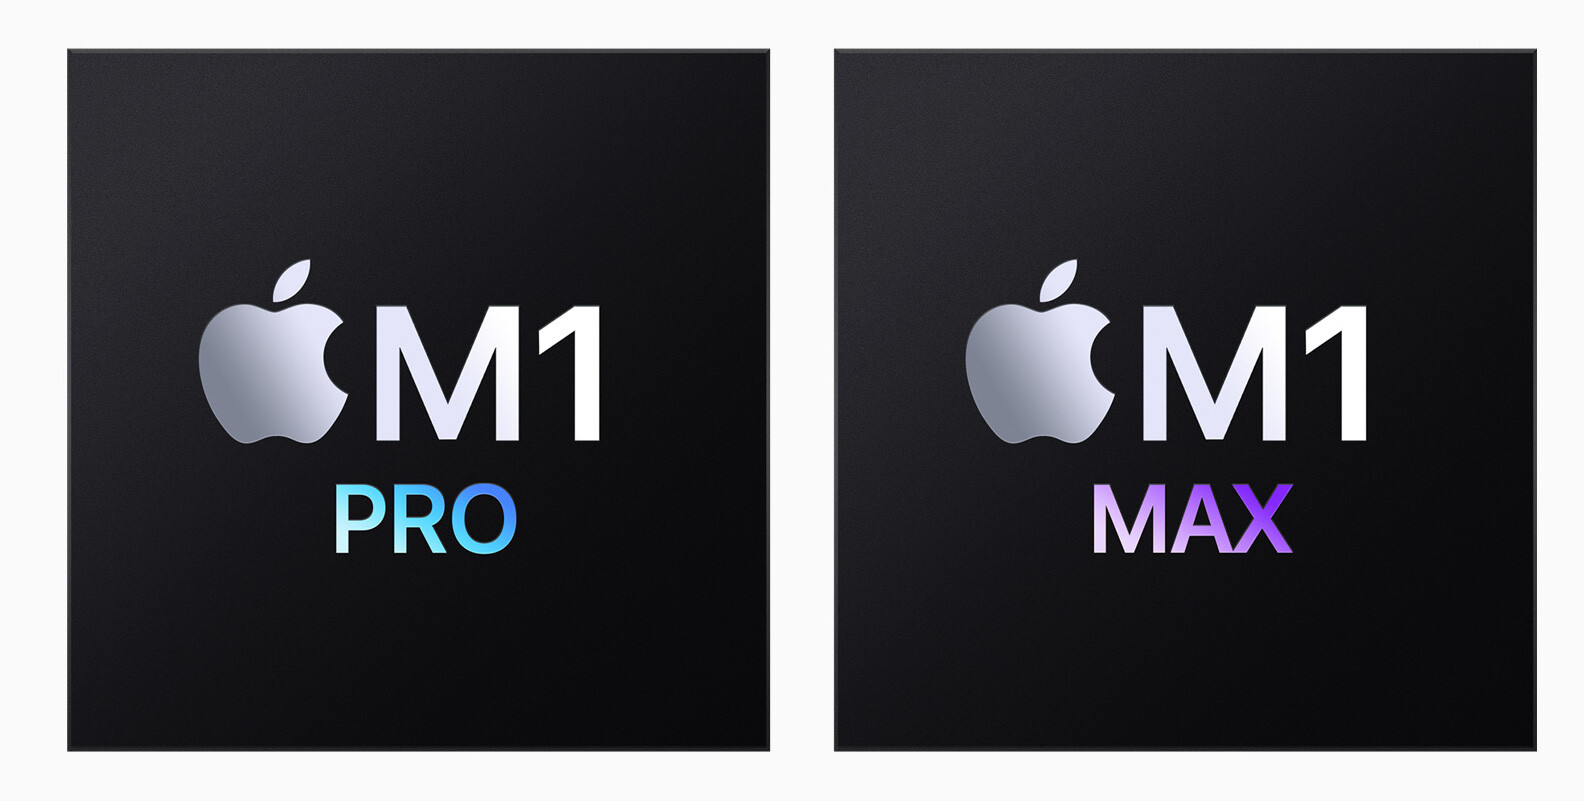 苹果最强芯片M1 Pro 和M1 Max 有什么差别？